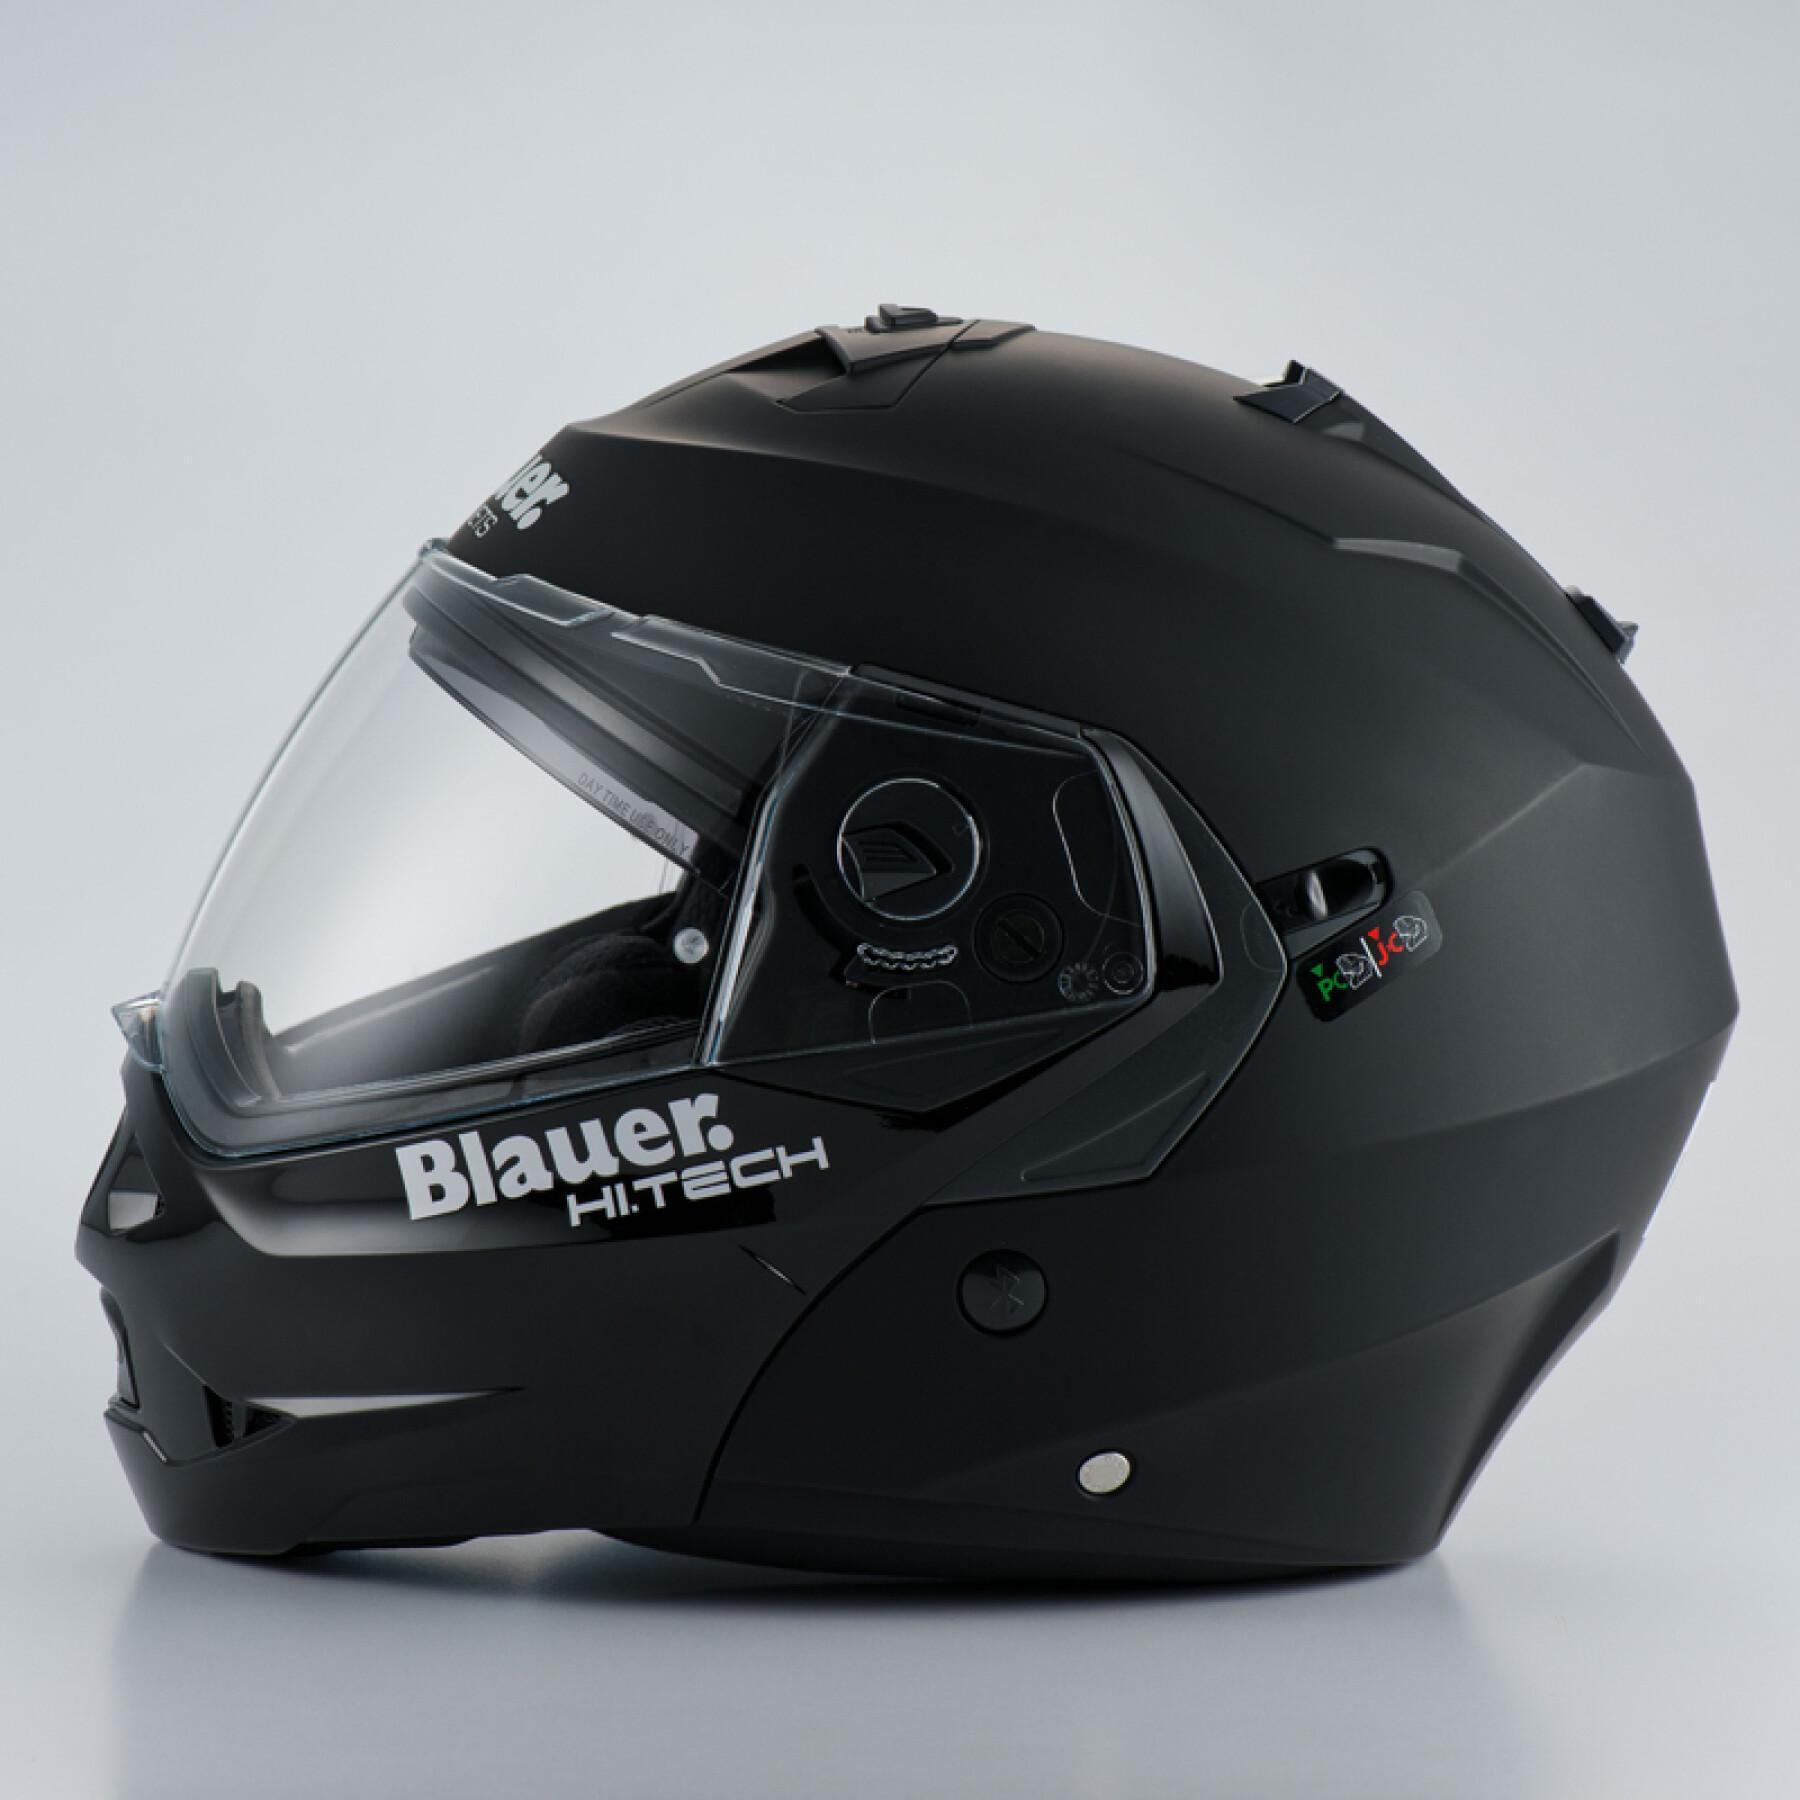 Modular motorcycle helmet Blauer Sky